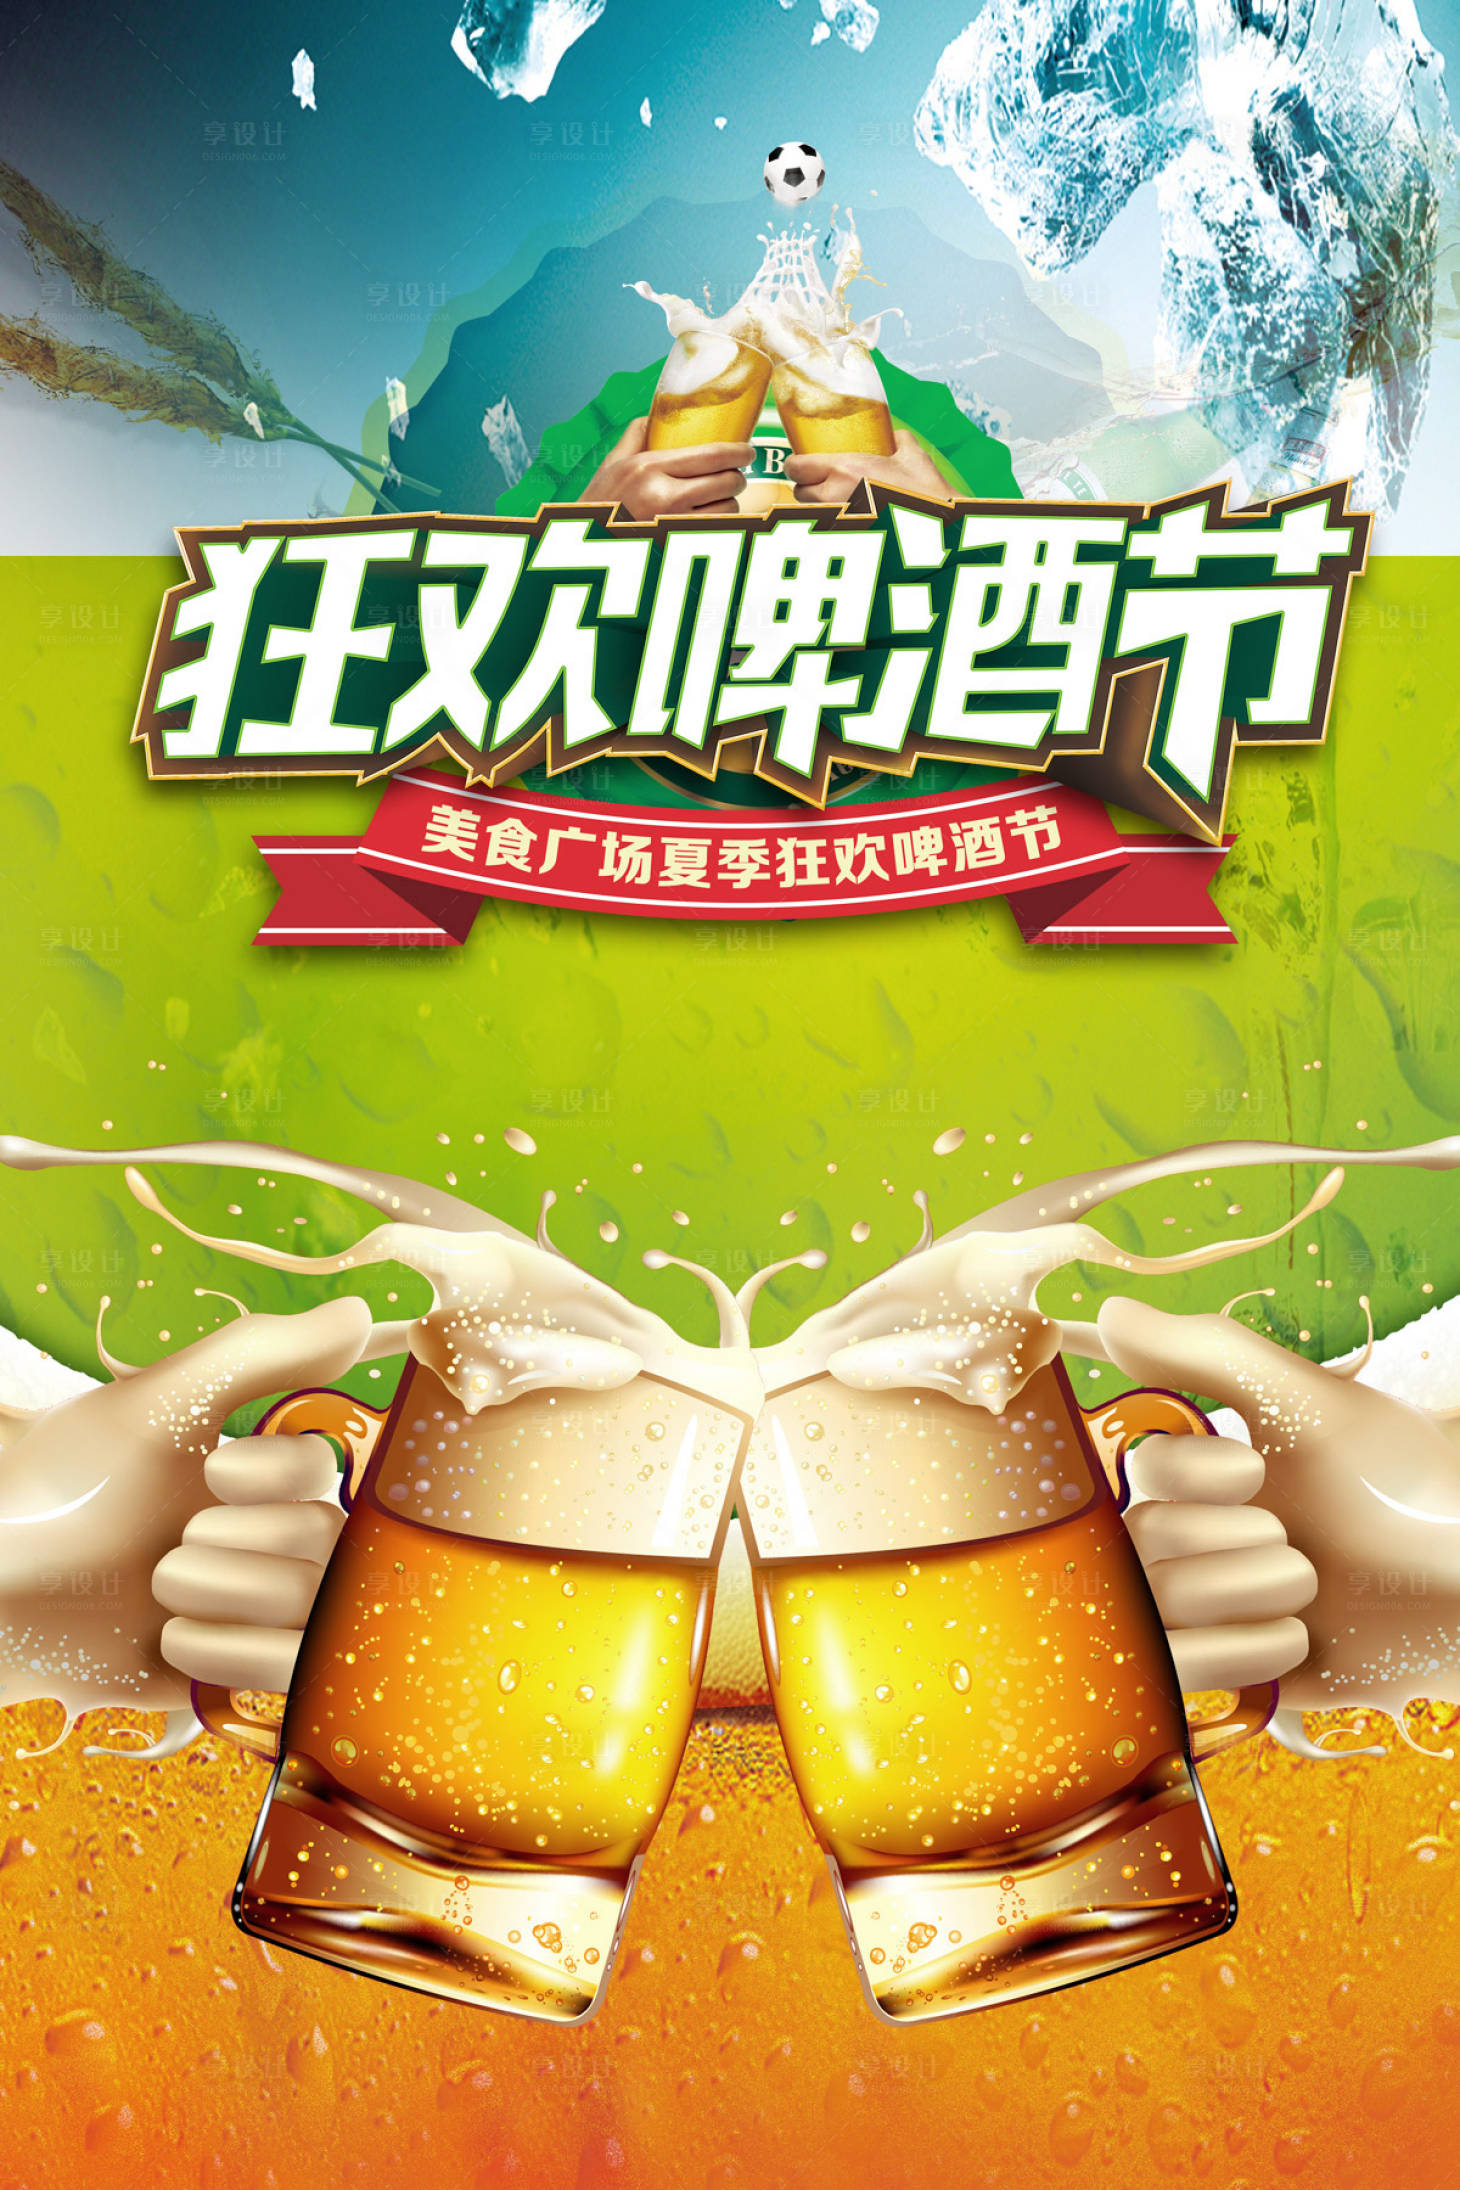 青岛国际啤酒节为何会成为全球第二大规模啤酒节？ - 知乎